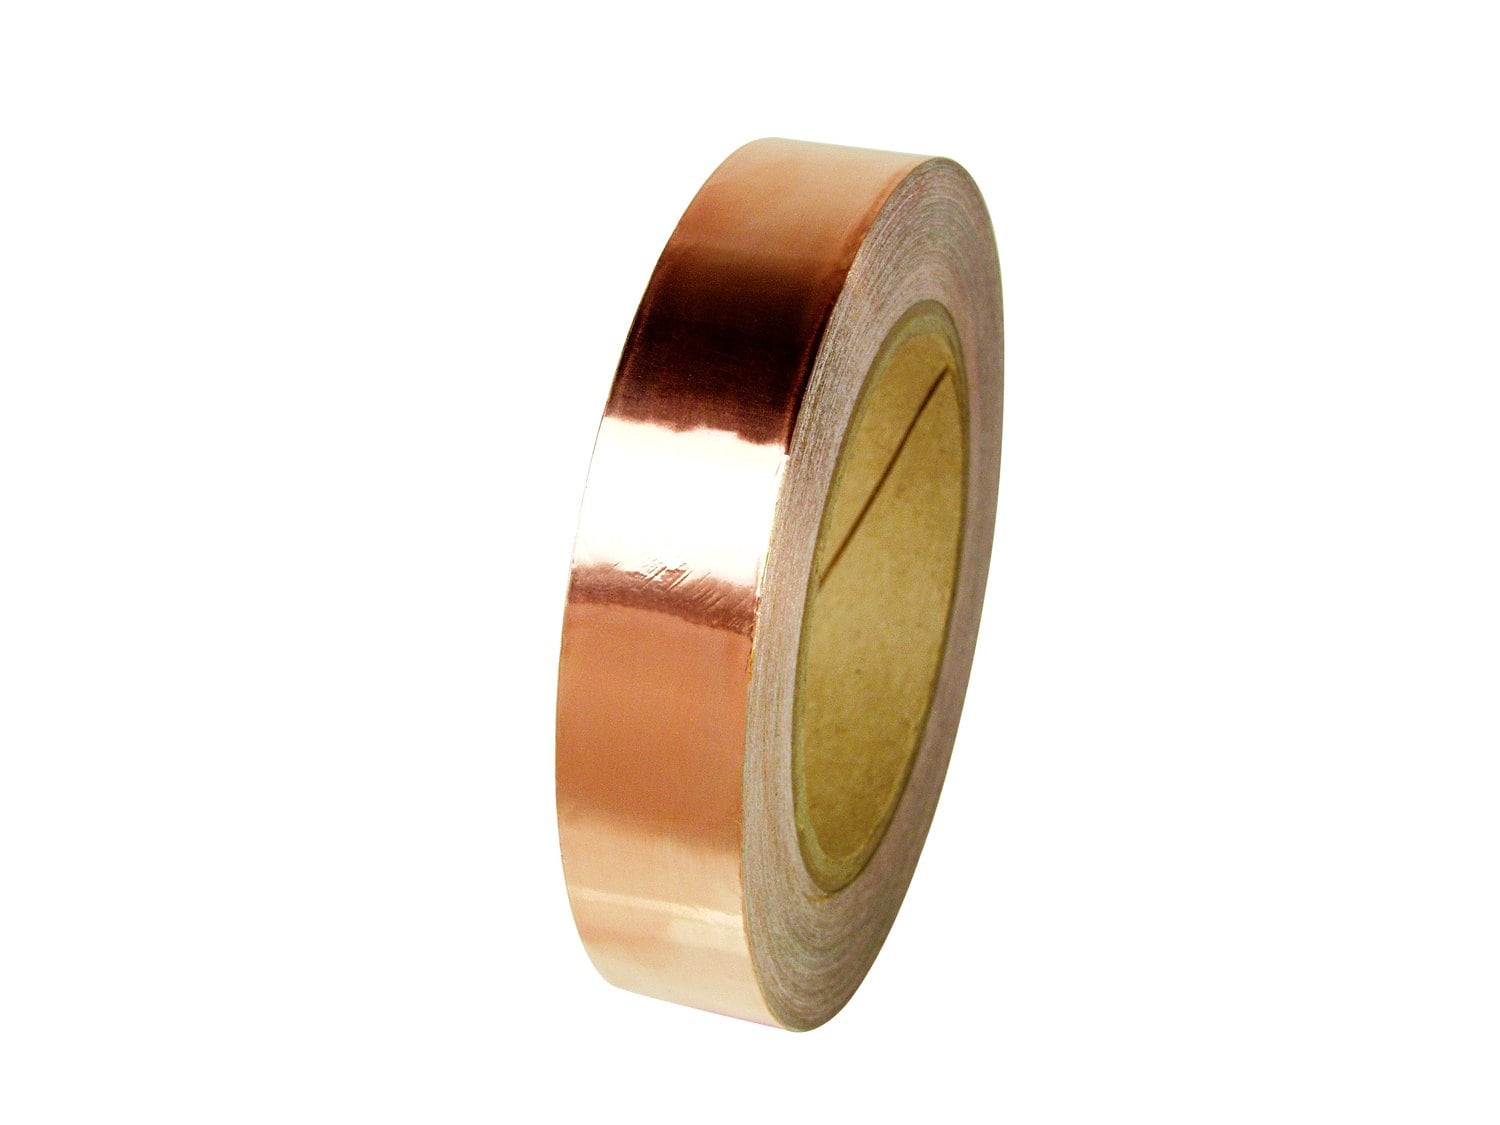 7000132822 - 3M Copper Foil Tape 1126, 3/8 in x 36 yd (9.52 mm x 16.5 m), 24
Rolls/Case